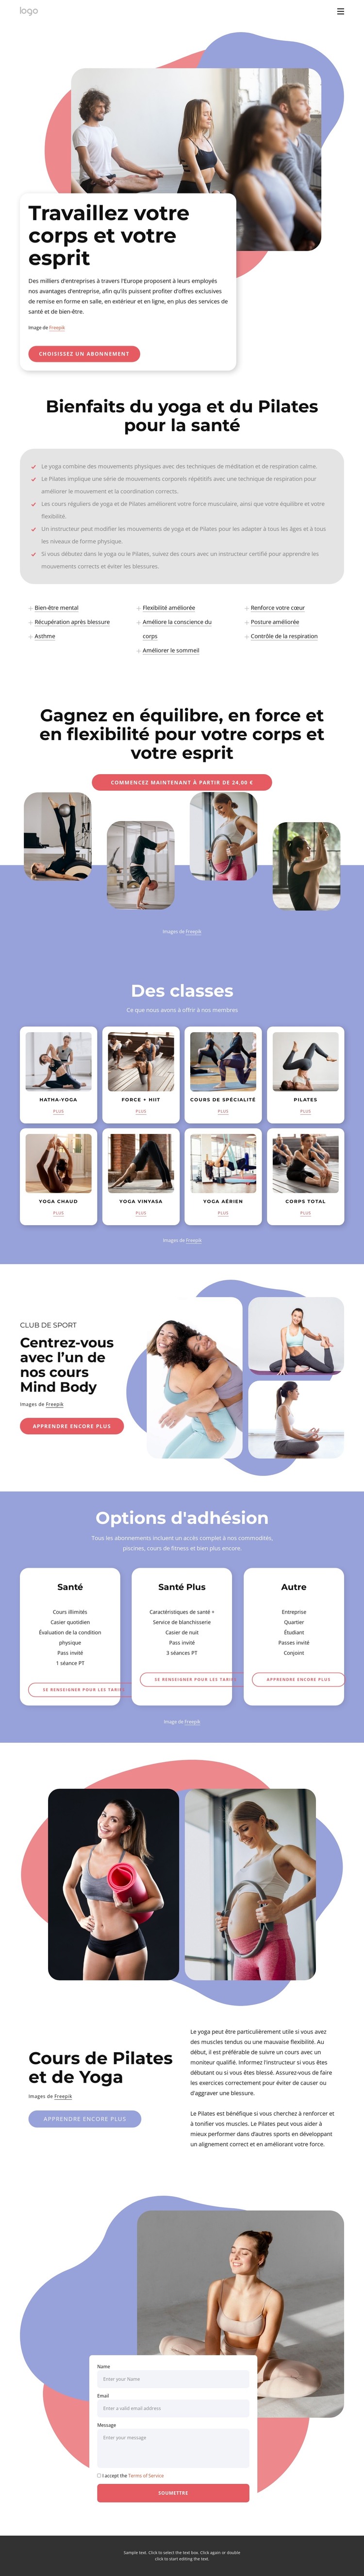 Cours de Pilates et de yoga Modèle HTML